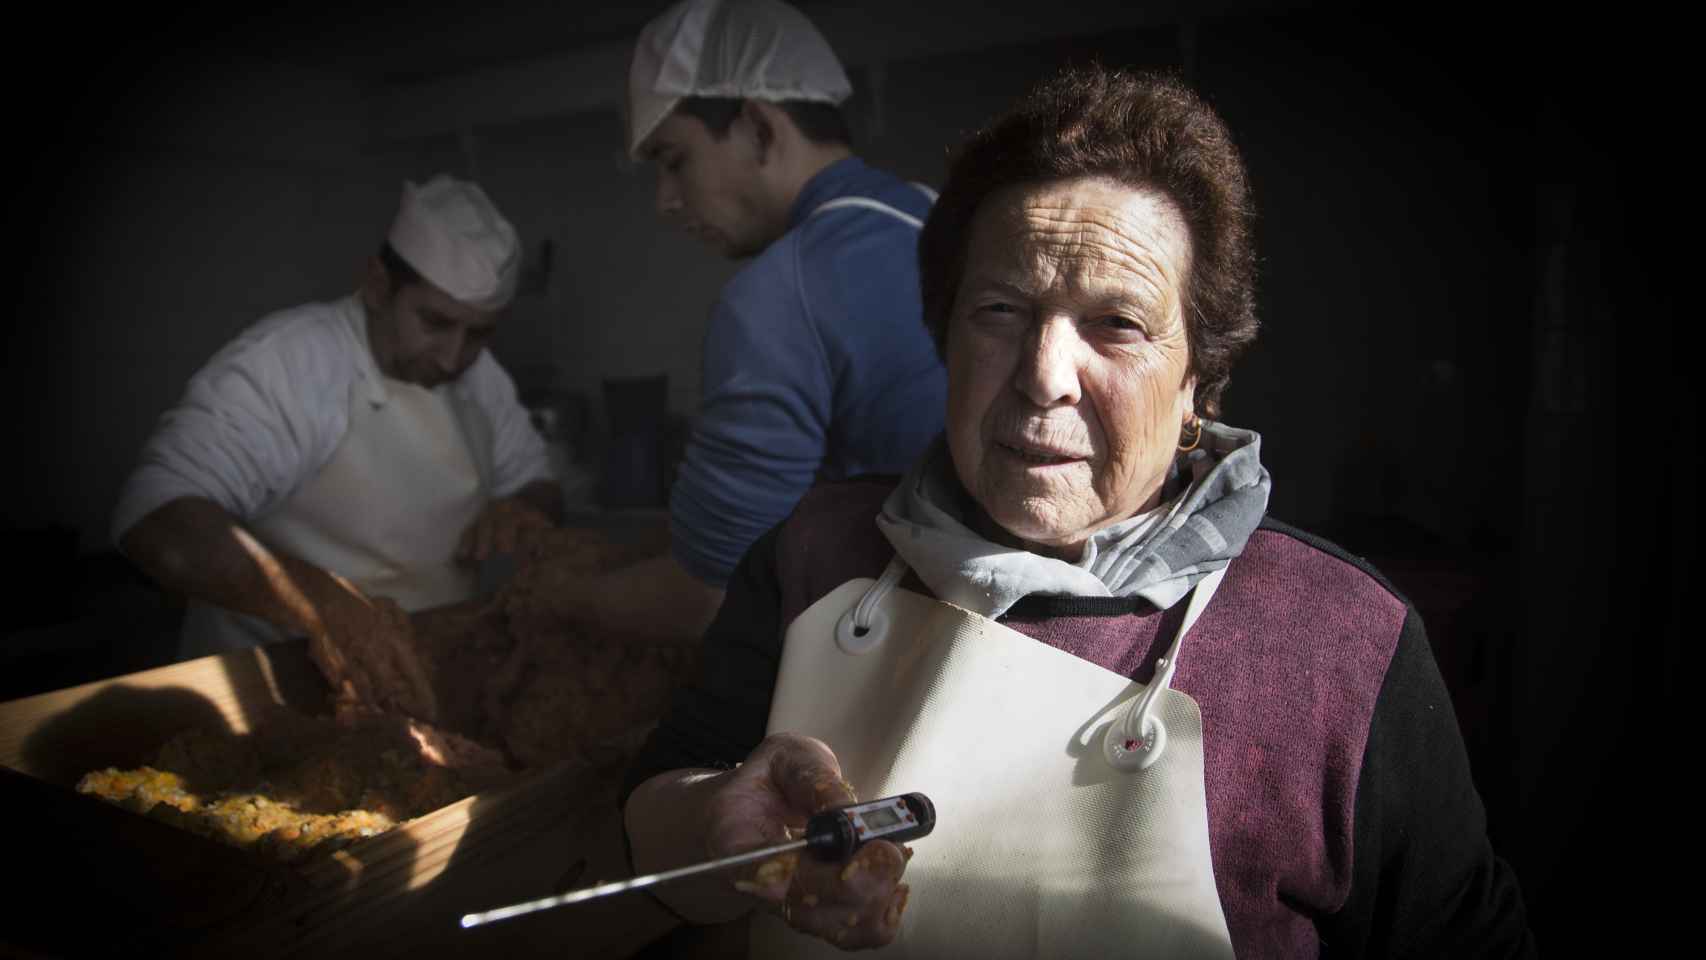 Concepción, en su carnicería Moreno, sosteniendo un termómetro alimenticio comprado en Amazon.